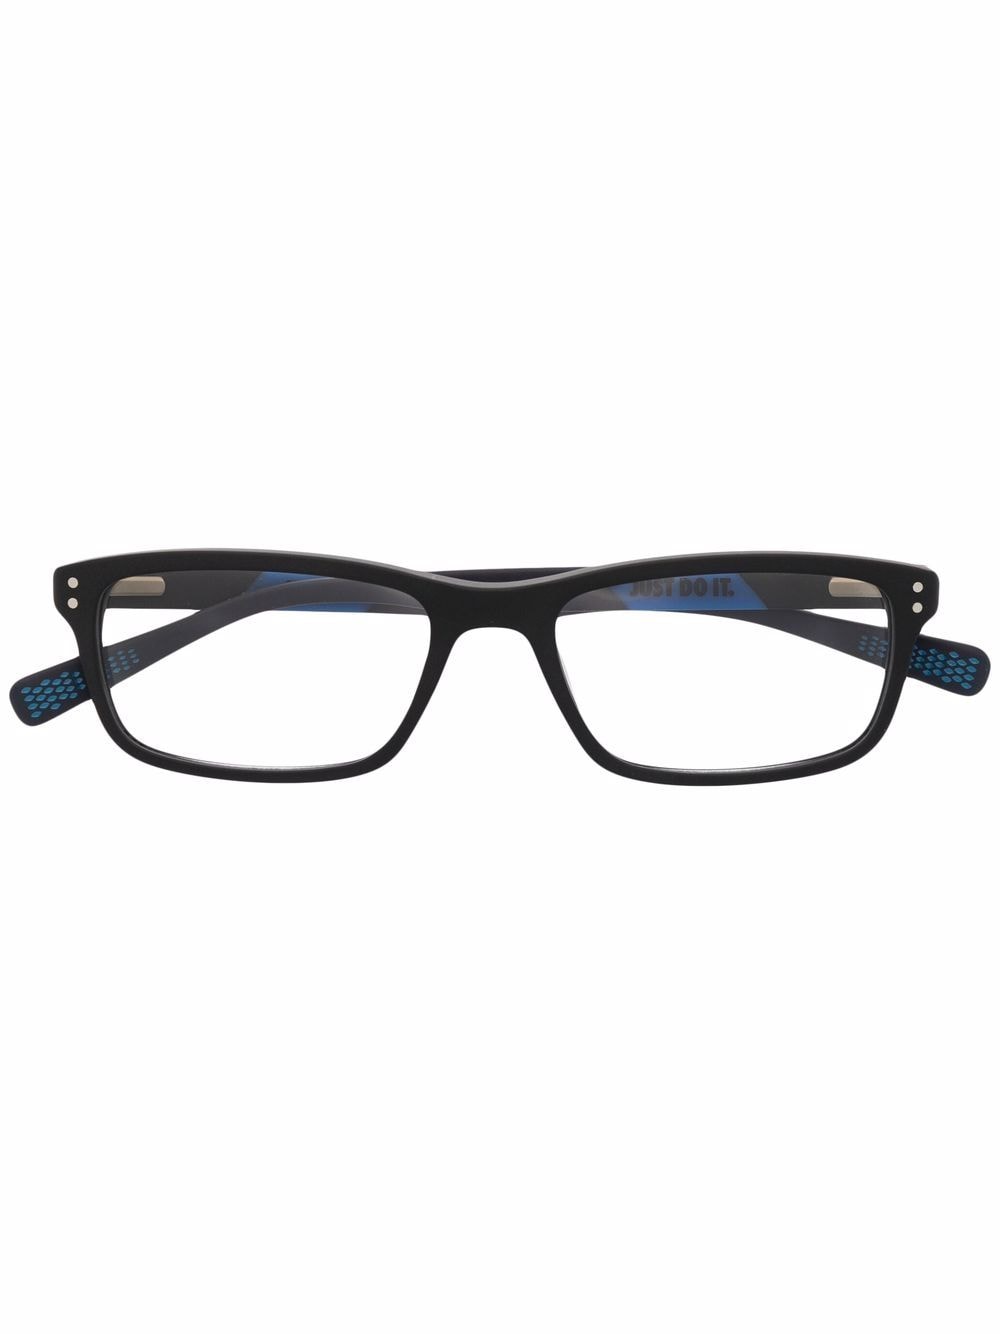 nike lunettes de vue à monture rectangulaire - bleu